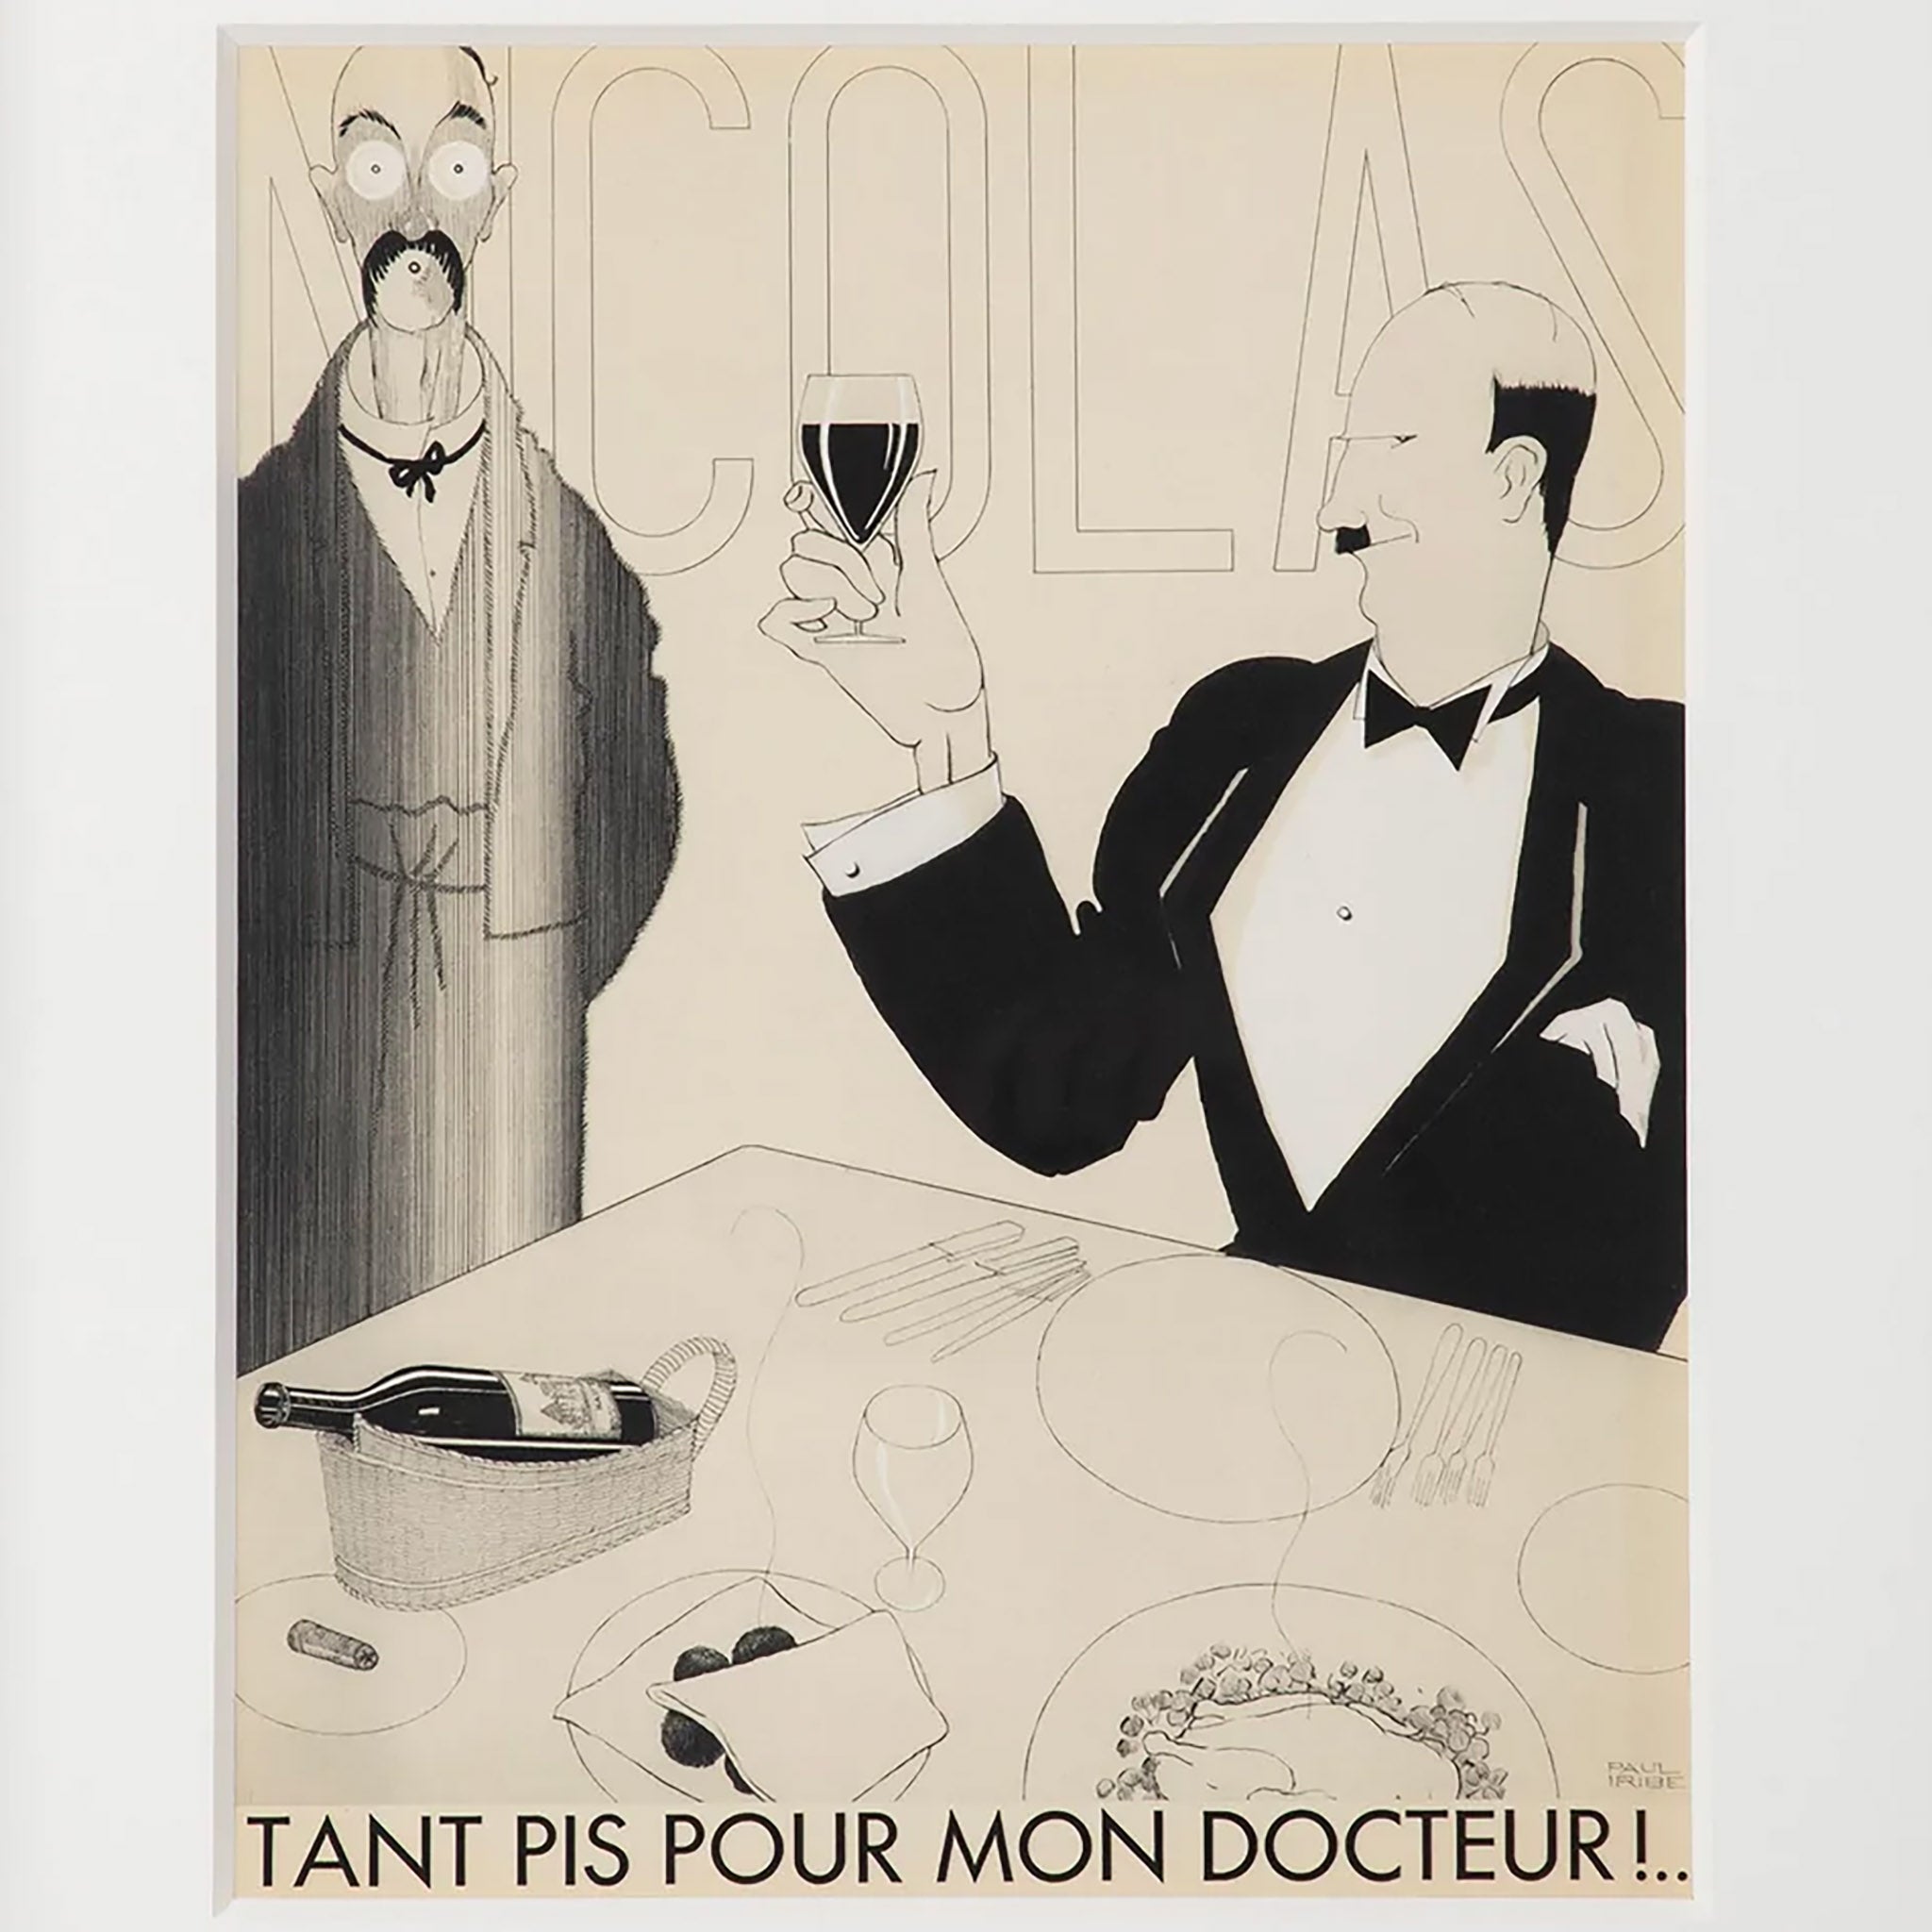 Nicolas - Tant pis Pour Mon Docteur by Paul Iribe, Original Lithograph